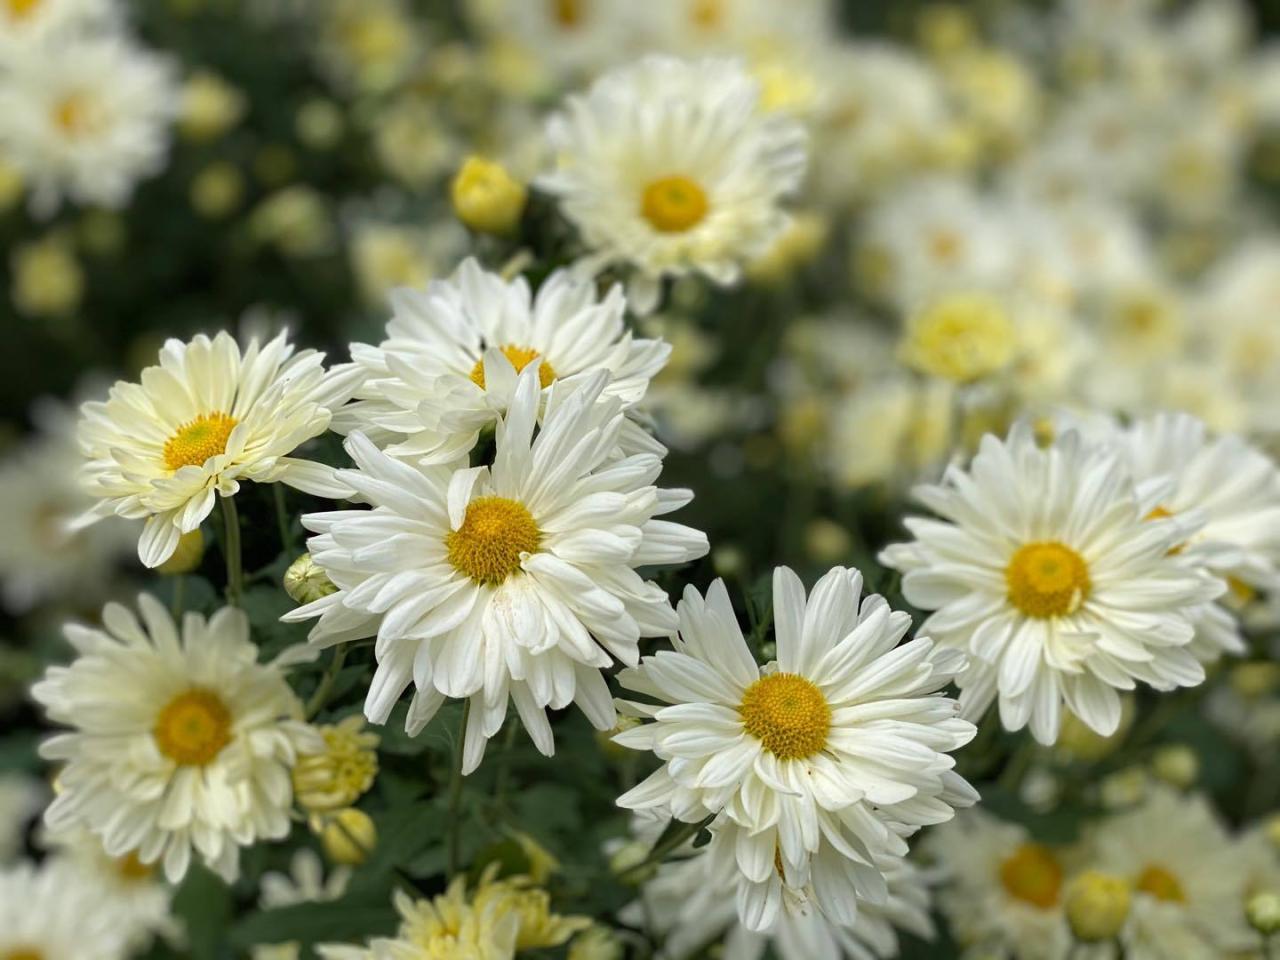 Hoa cúc họa mi: Nàng thơ thiên nhiên trong một cành hoa